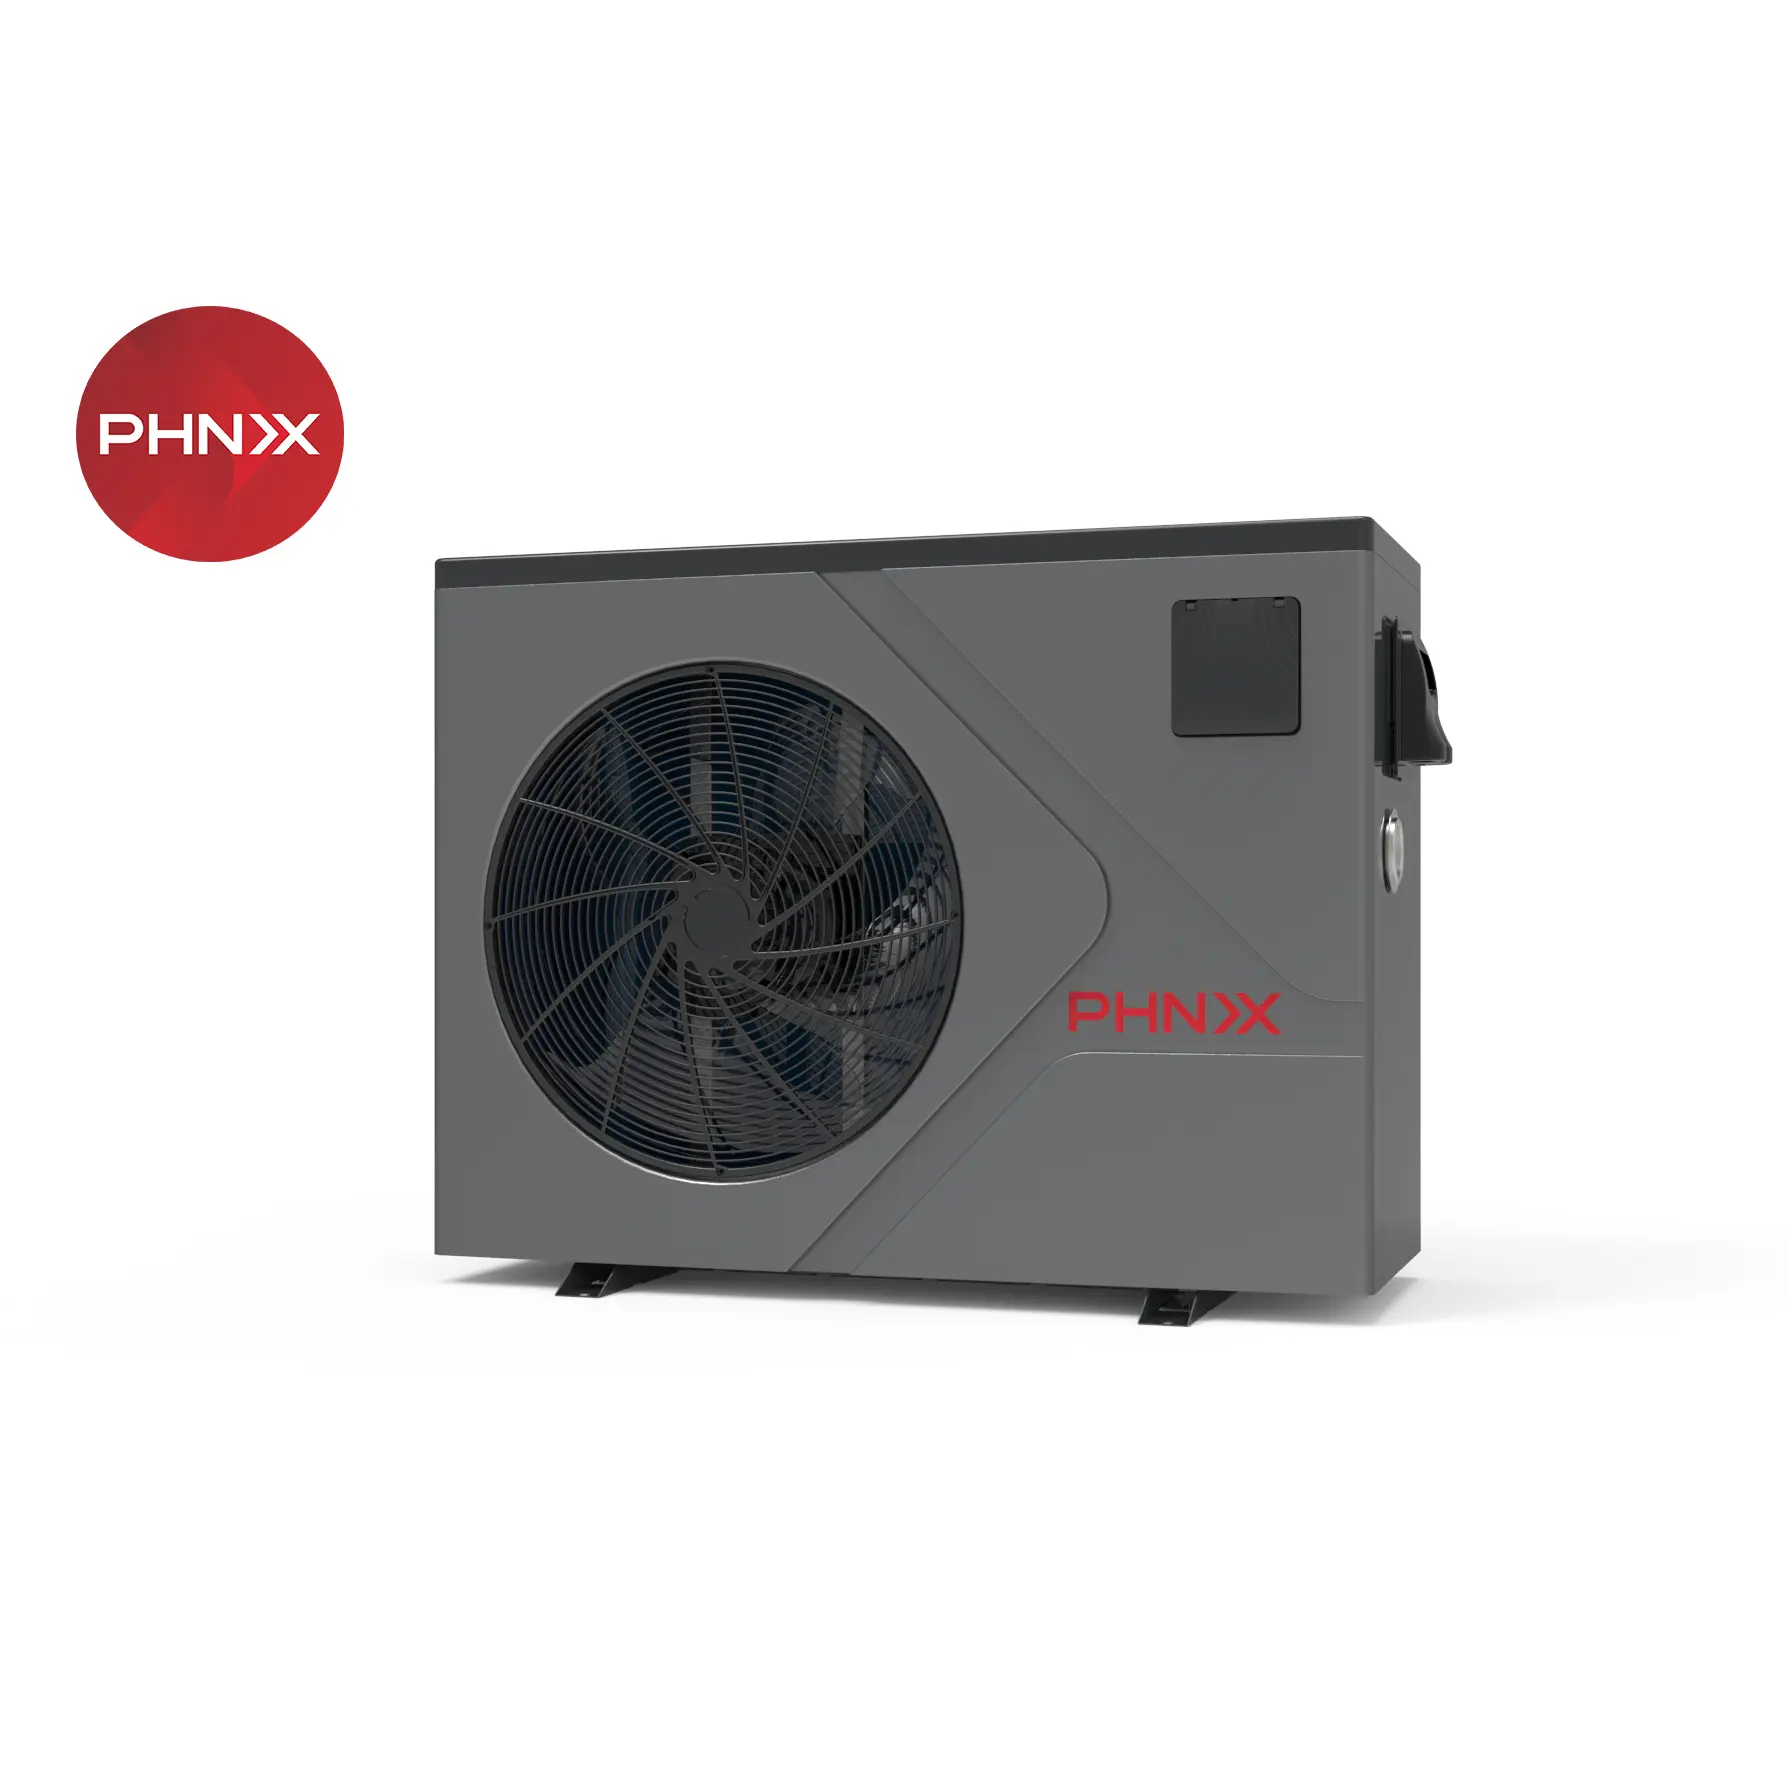 PHNIX Full Inverter pompa di calore R32 Outdoor Spa riscaldamento piscina pompa di calore fonte d'aria